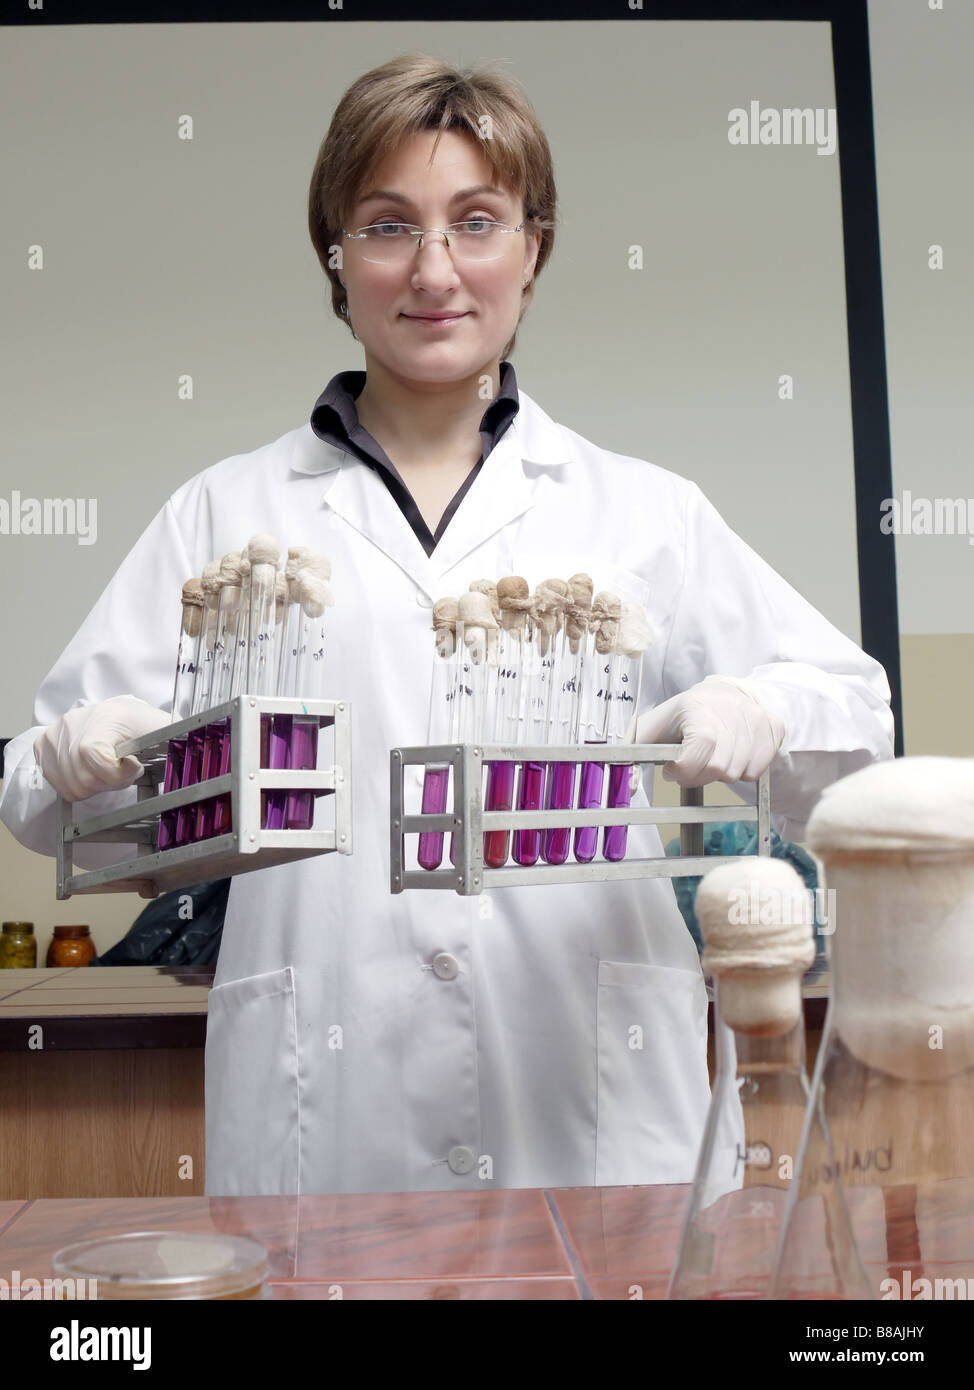 Porträt von weiblichen Labortechniker holding Racks mit Reagenzgläsern Stockfoto